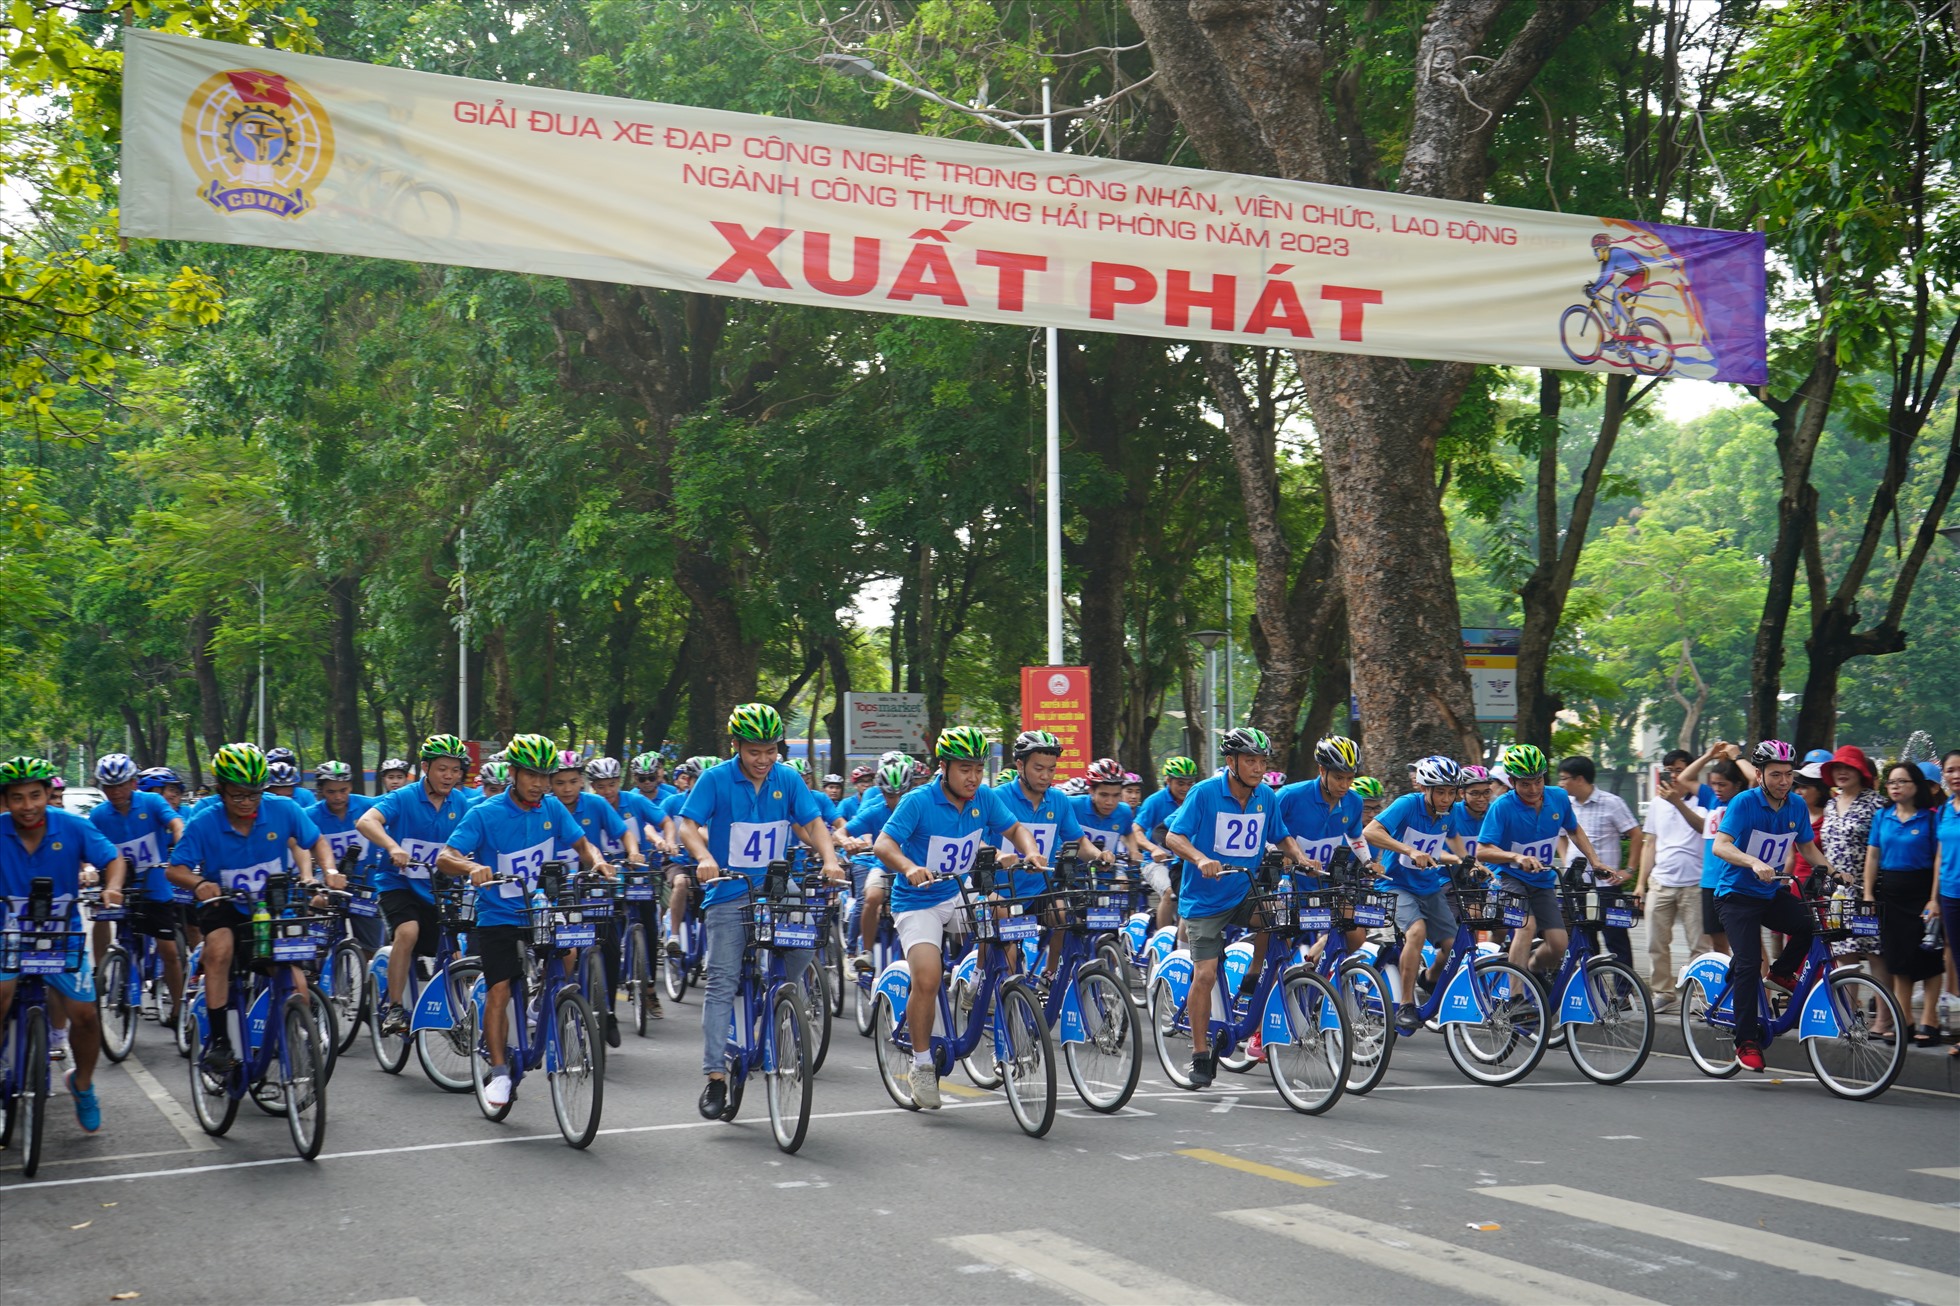 Giải đua xe đạp là hoạt động chào mừng kỷ niệm 94 năm ngày thành lập Công đoàn Việt Nam, chào mừng Đại hội Công đoàn thành phố lần thứ 15. Ảnh: Mai Dung